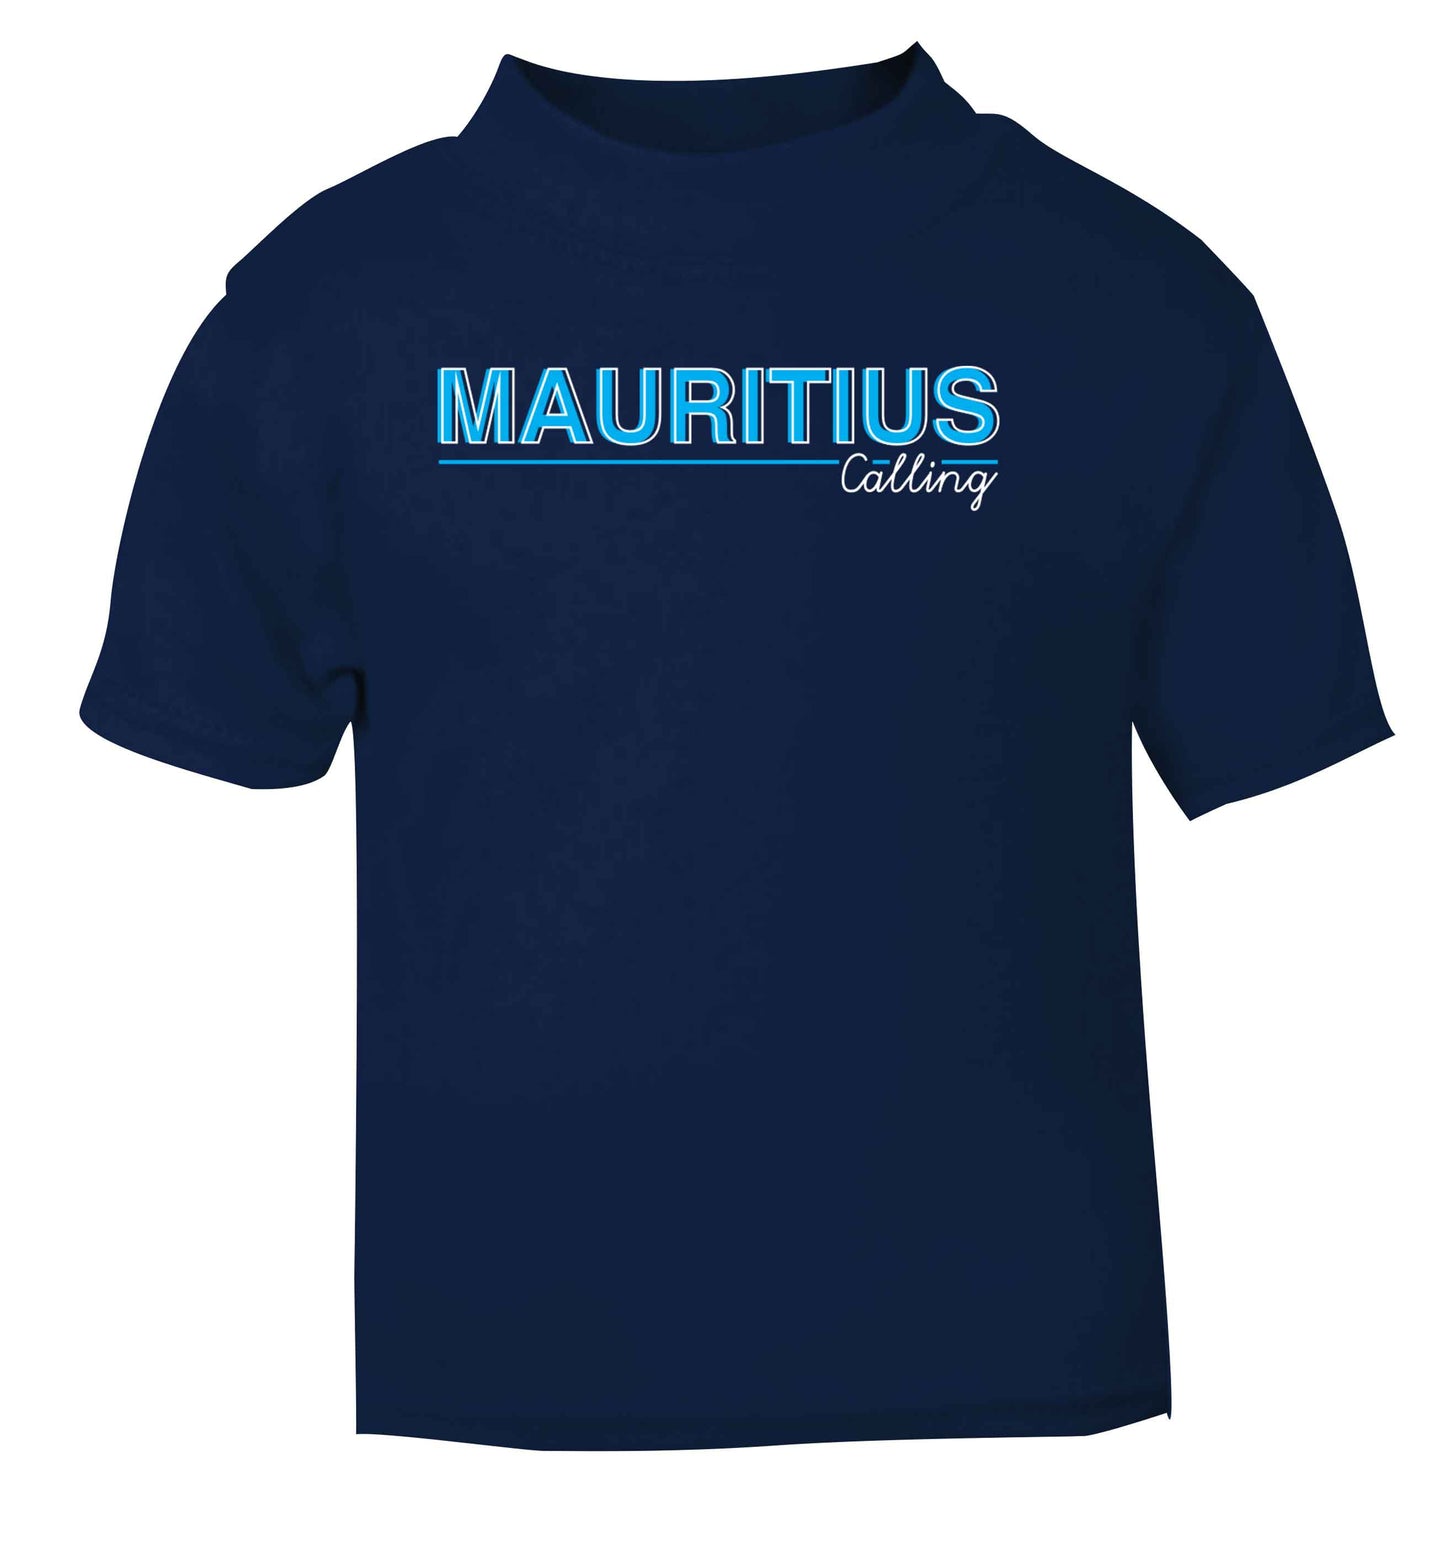 Mauritius calling navy Baby Toddler Tshirt 2 Years